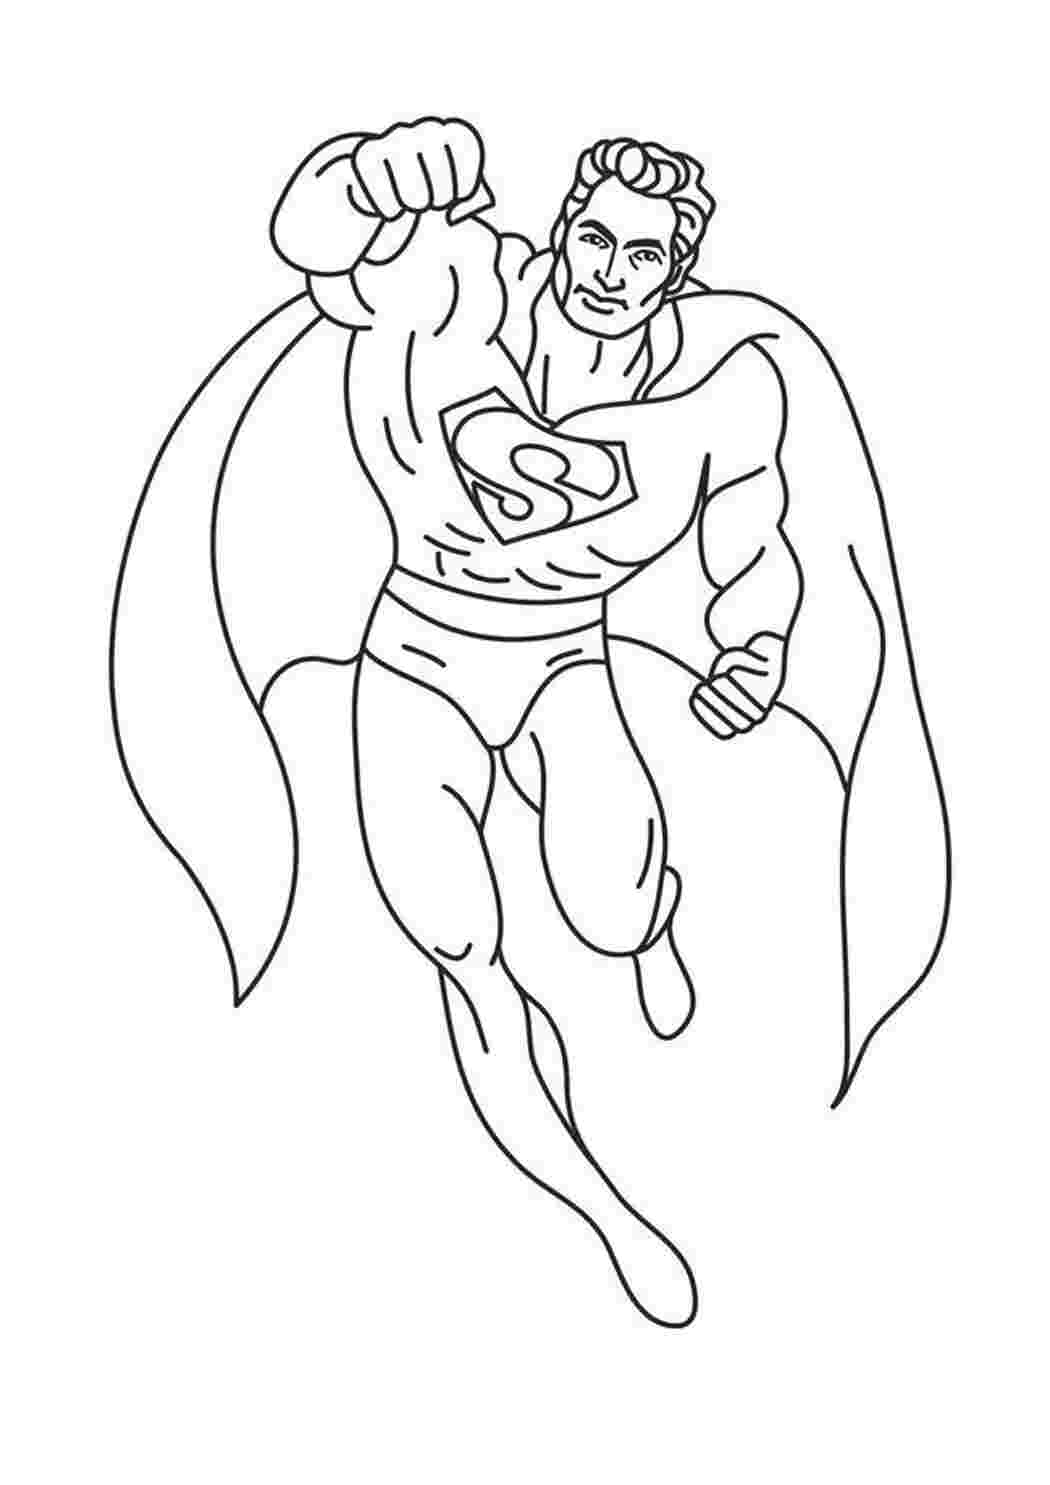 Раскраски картинки на рабочий стол онлайн Супергерои, супермен Распечатать раскраски для мальчиков